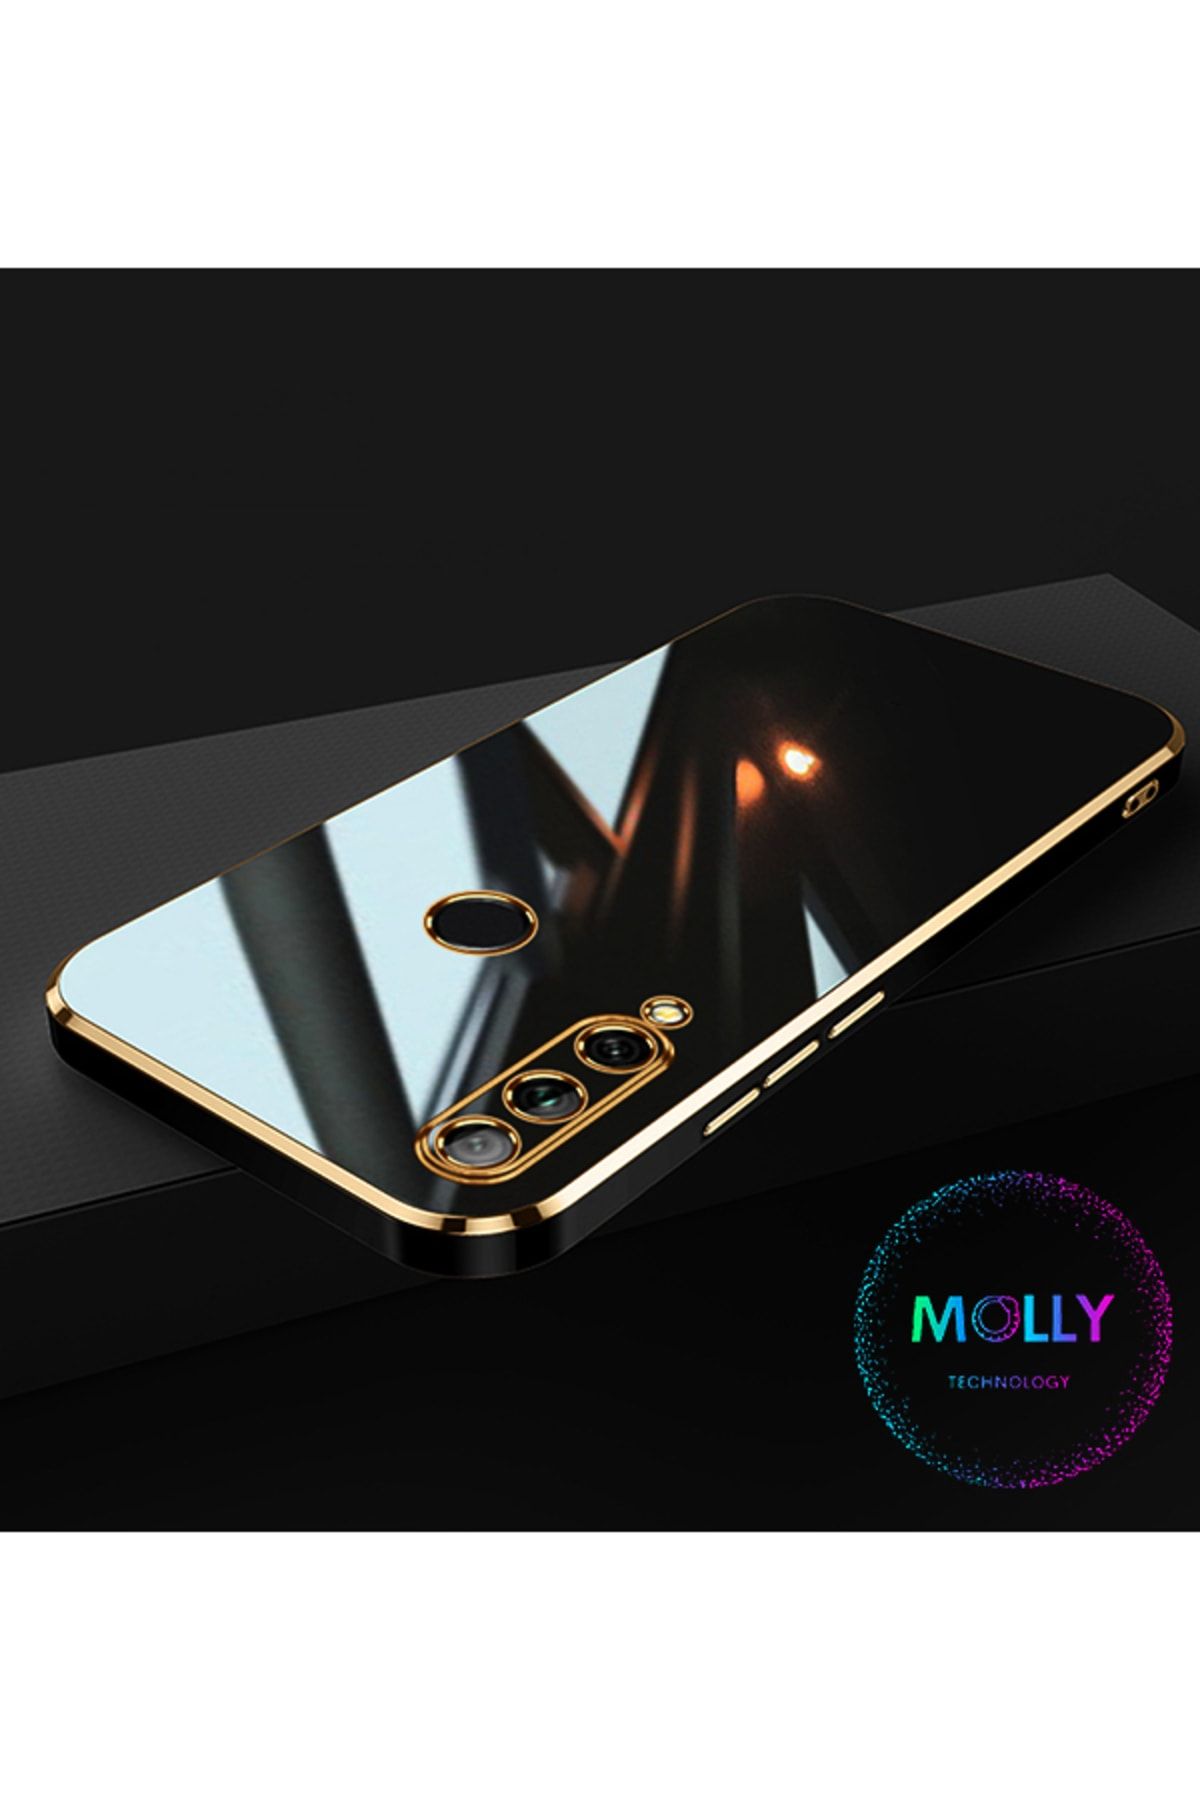 Molly Technology Huawei Y9 Prime 2019 Için Siyah Kenarları Gold Detaylı Lüks Silikon Kılıf